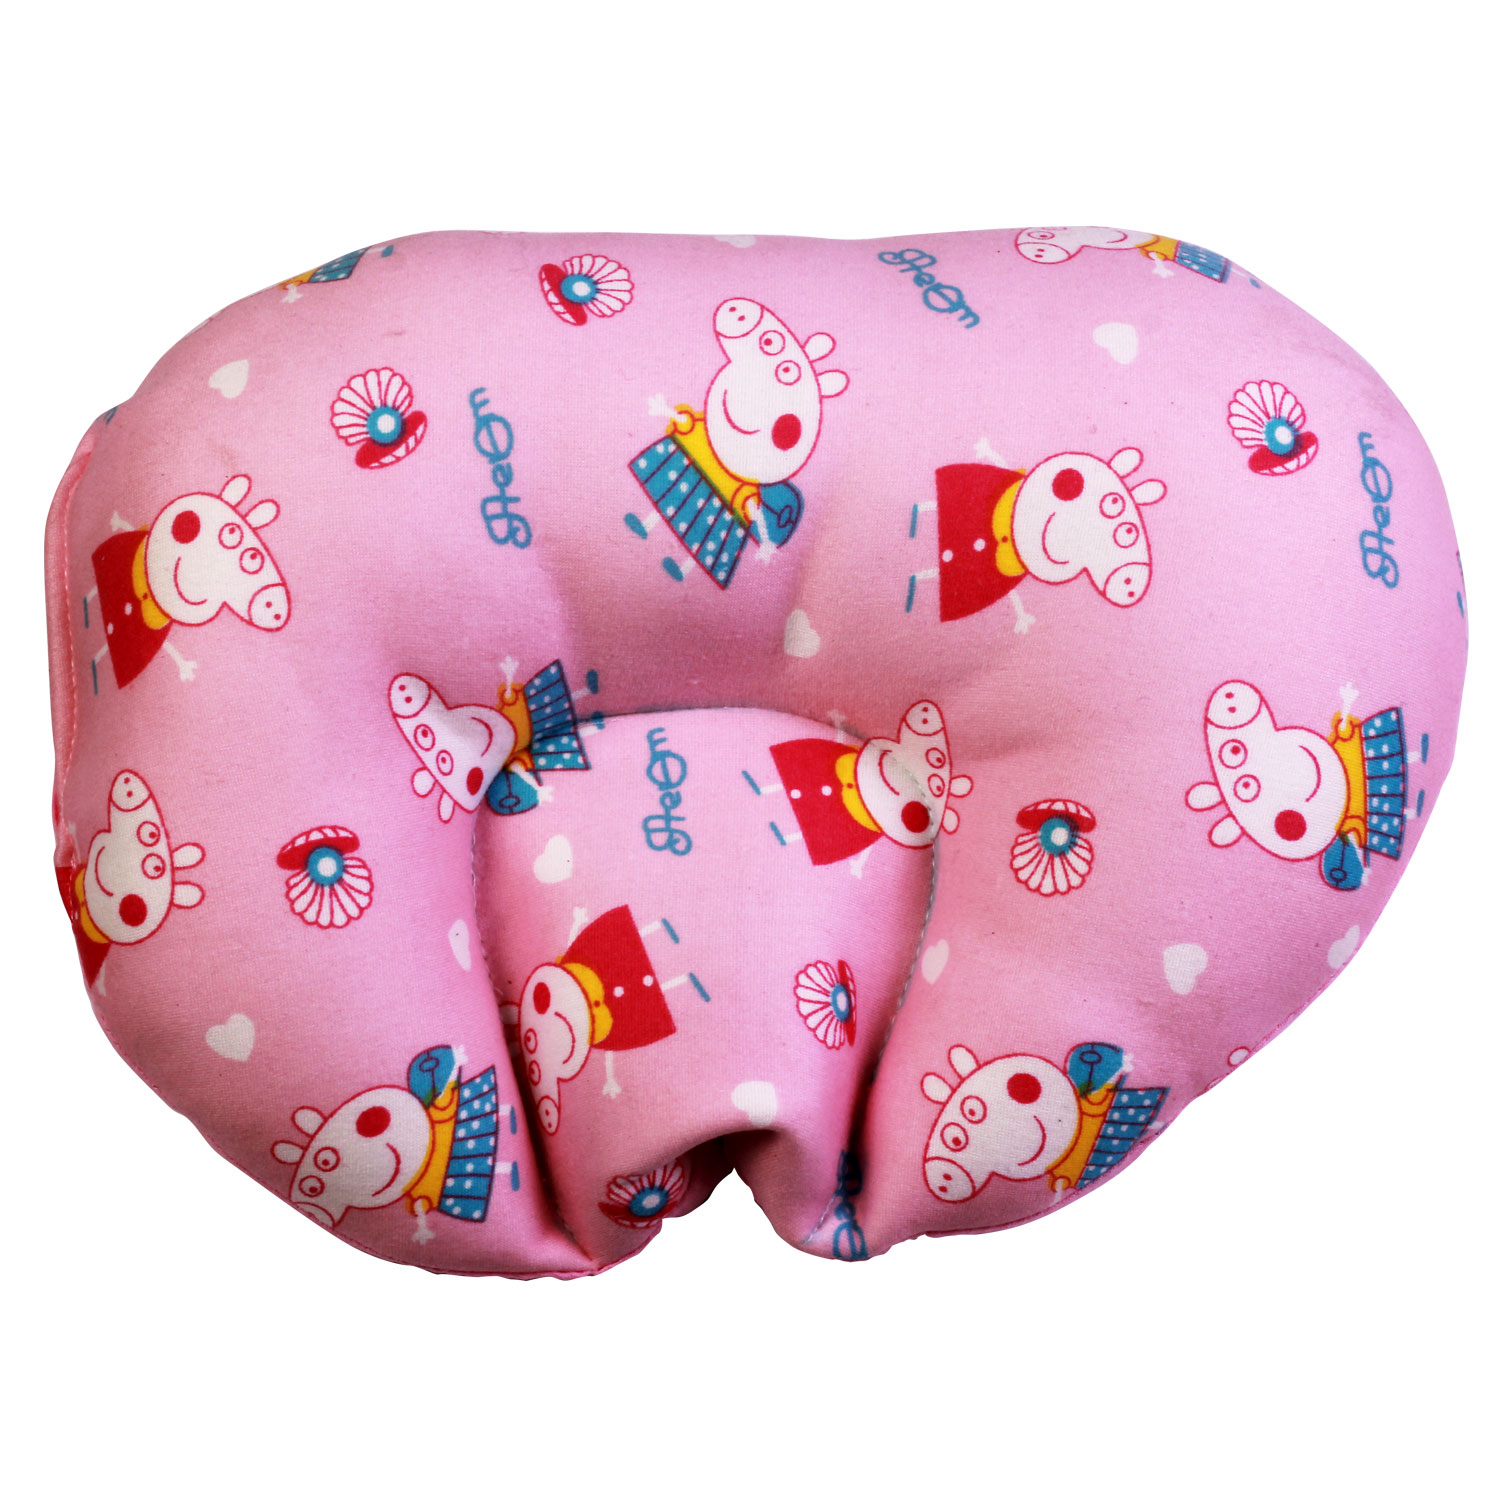 rai pillow for newborn baby